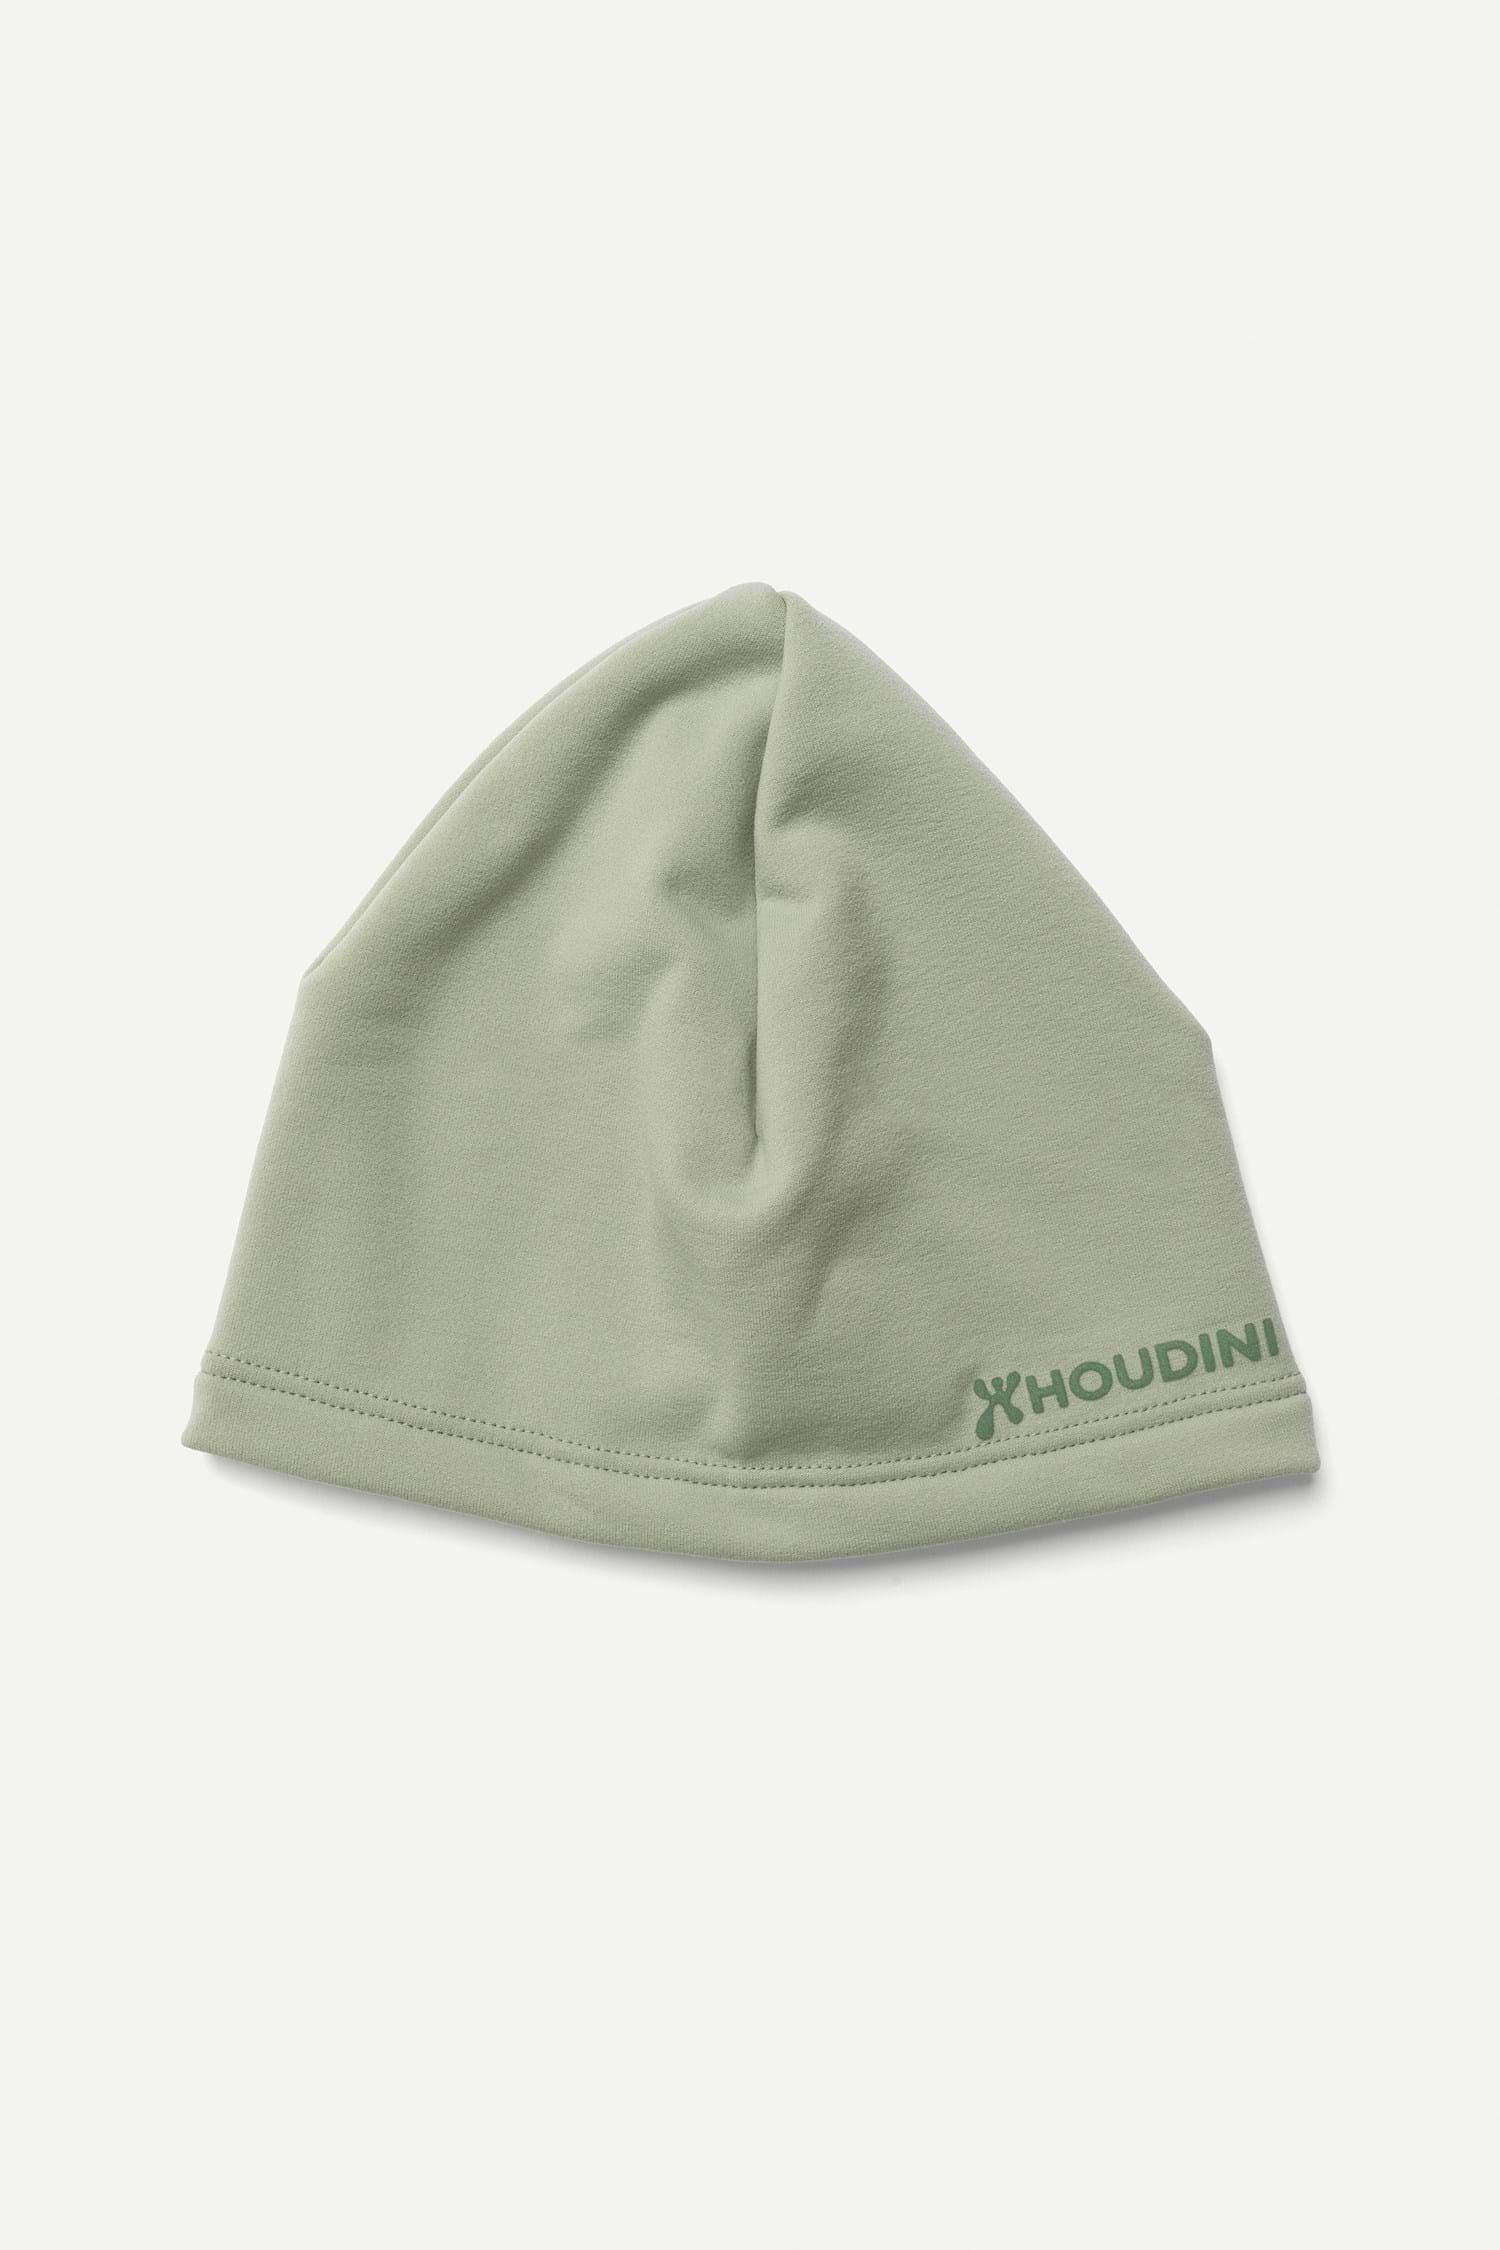 Houdini Power Top Hat, Green Horizon, S